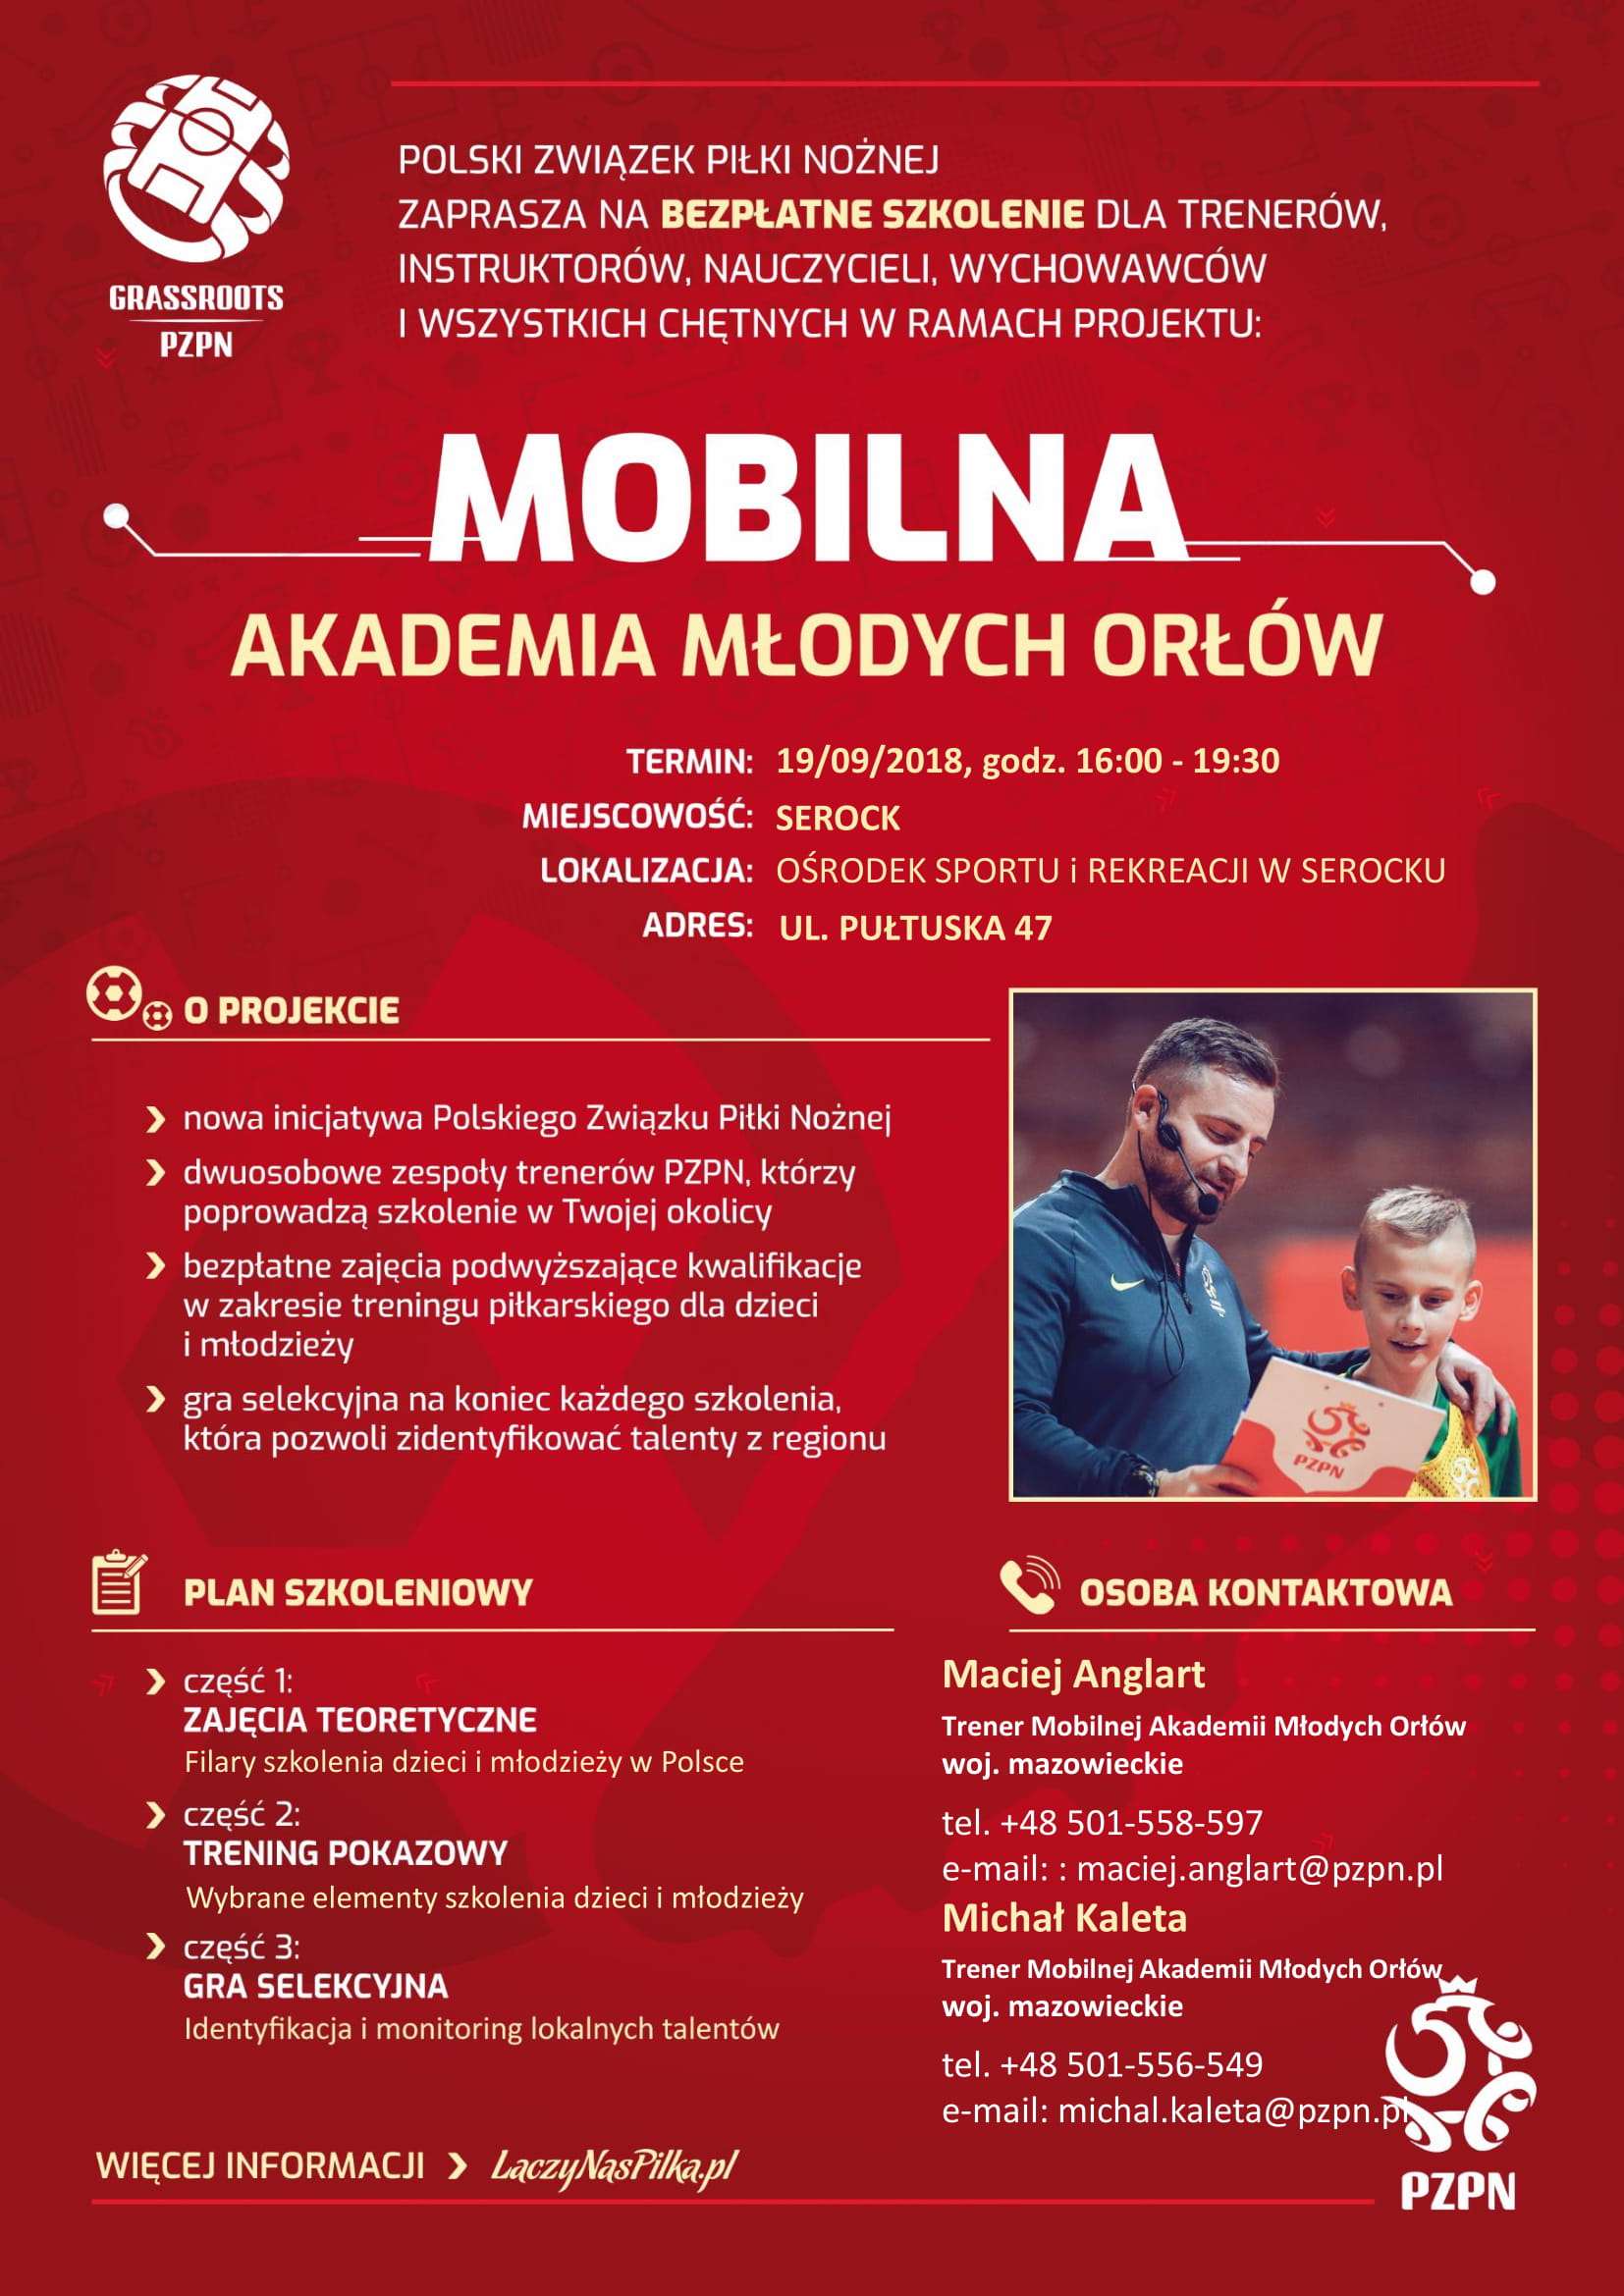 Mobilna Akademia Młodych Orłów Polskiego Związku Piłki Nożnej